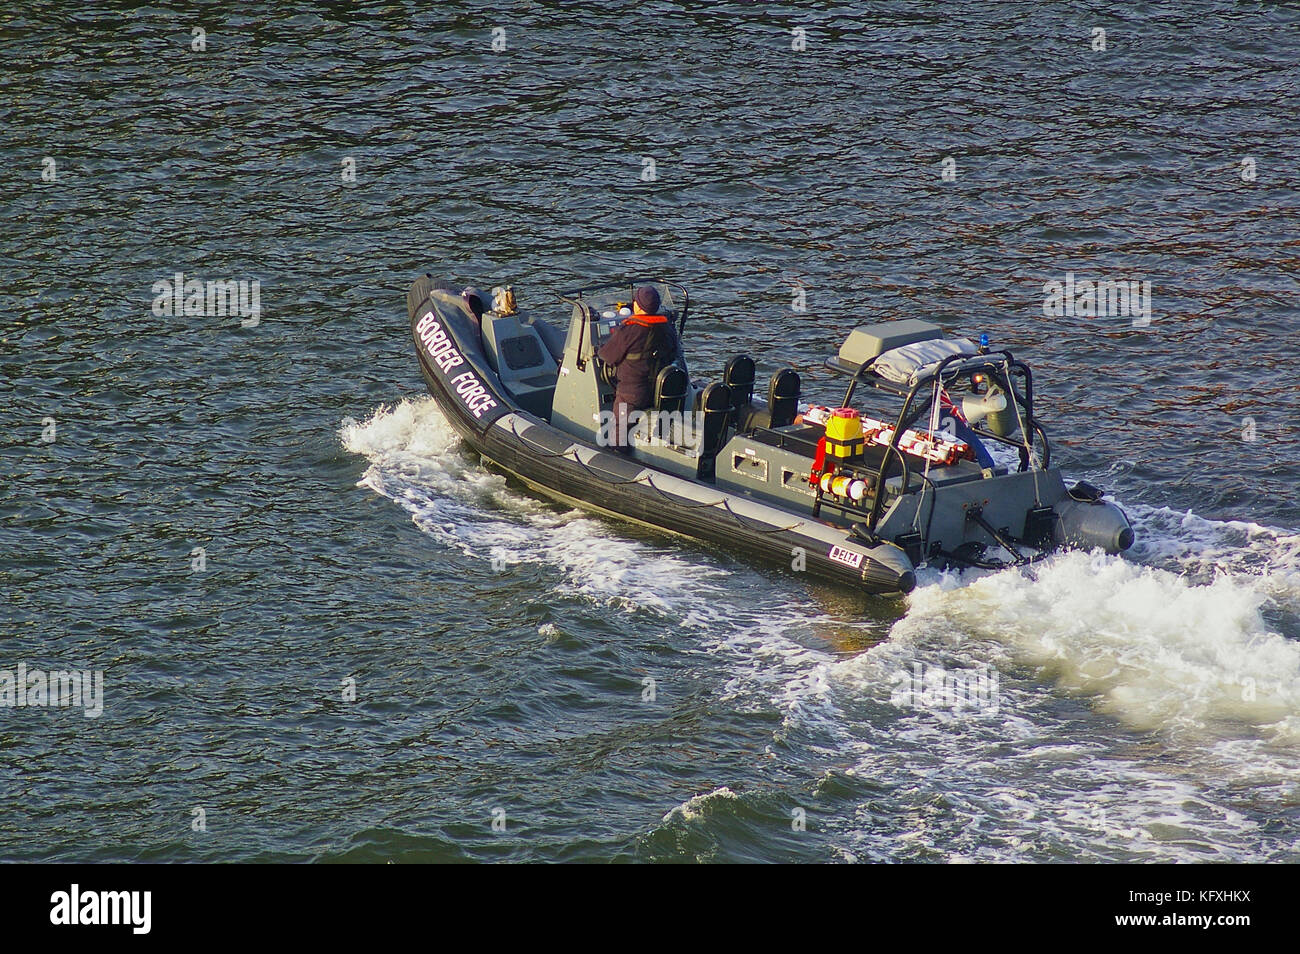 Newcastle, Royaume-Uni - Octobre 5th, 2014 - uk border vigueur rib le bateau de patrouille avec équipage Banque D'Images